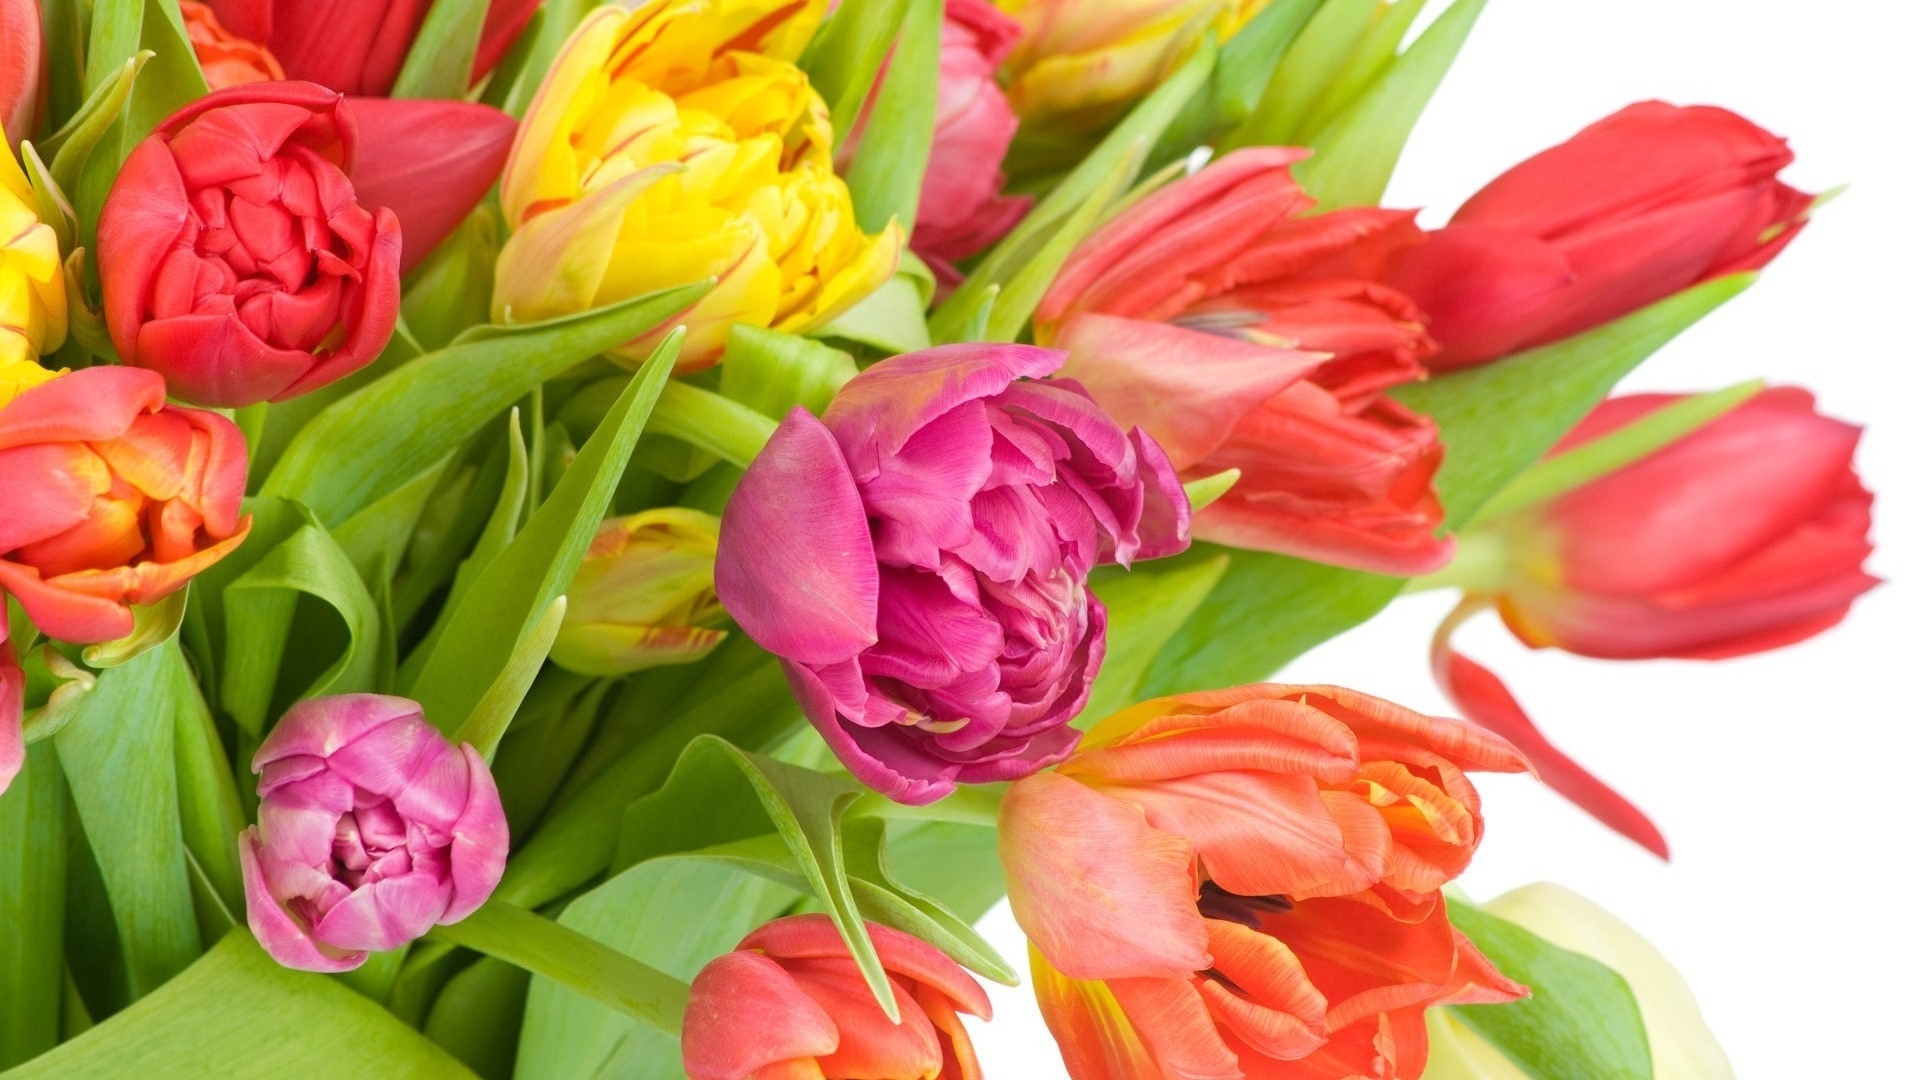 Скачать обои бесплатно Растения, Цветы, Тюльпаны картинка на рабочий стол ПК